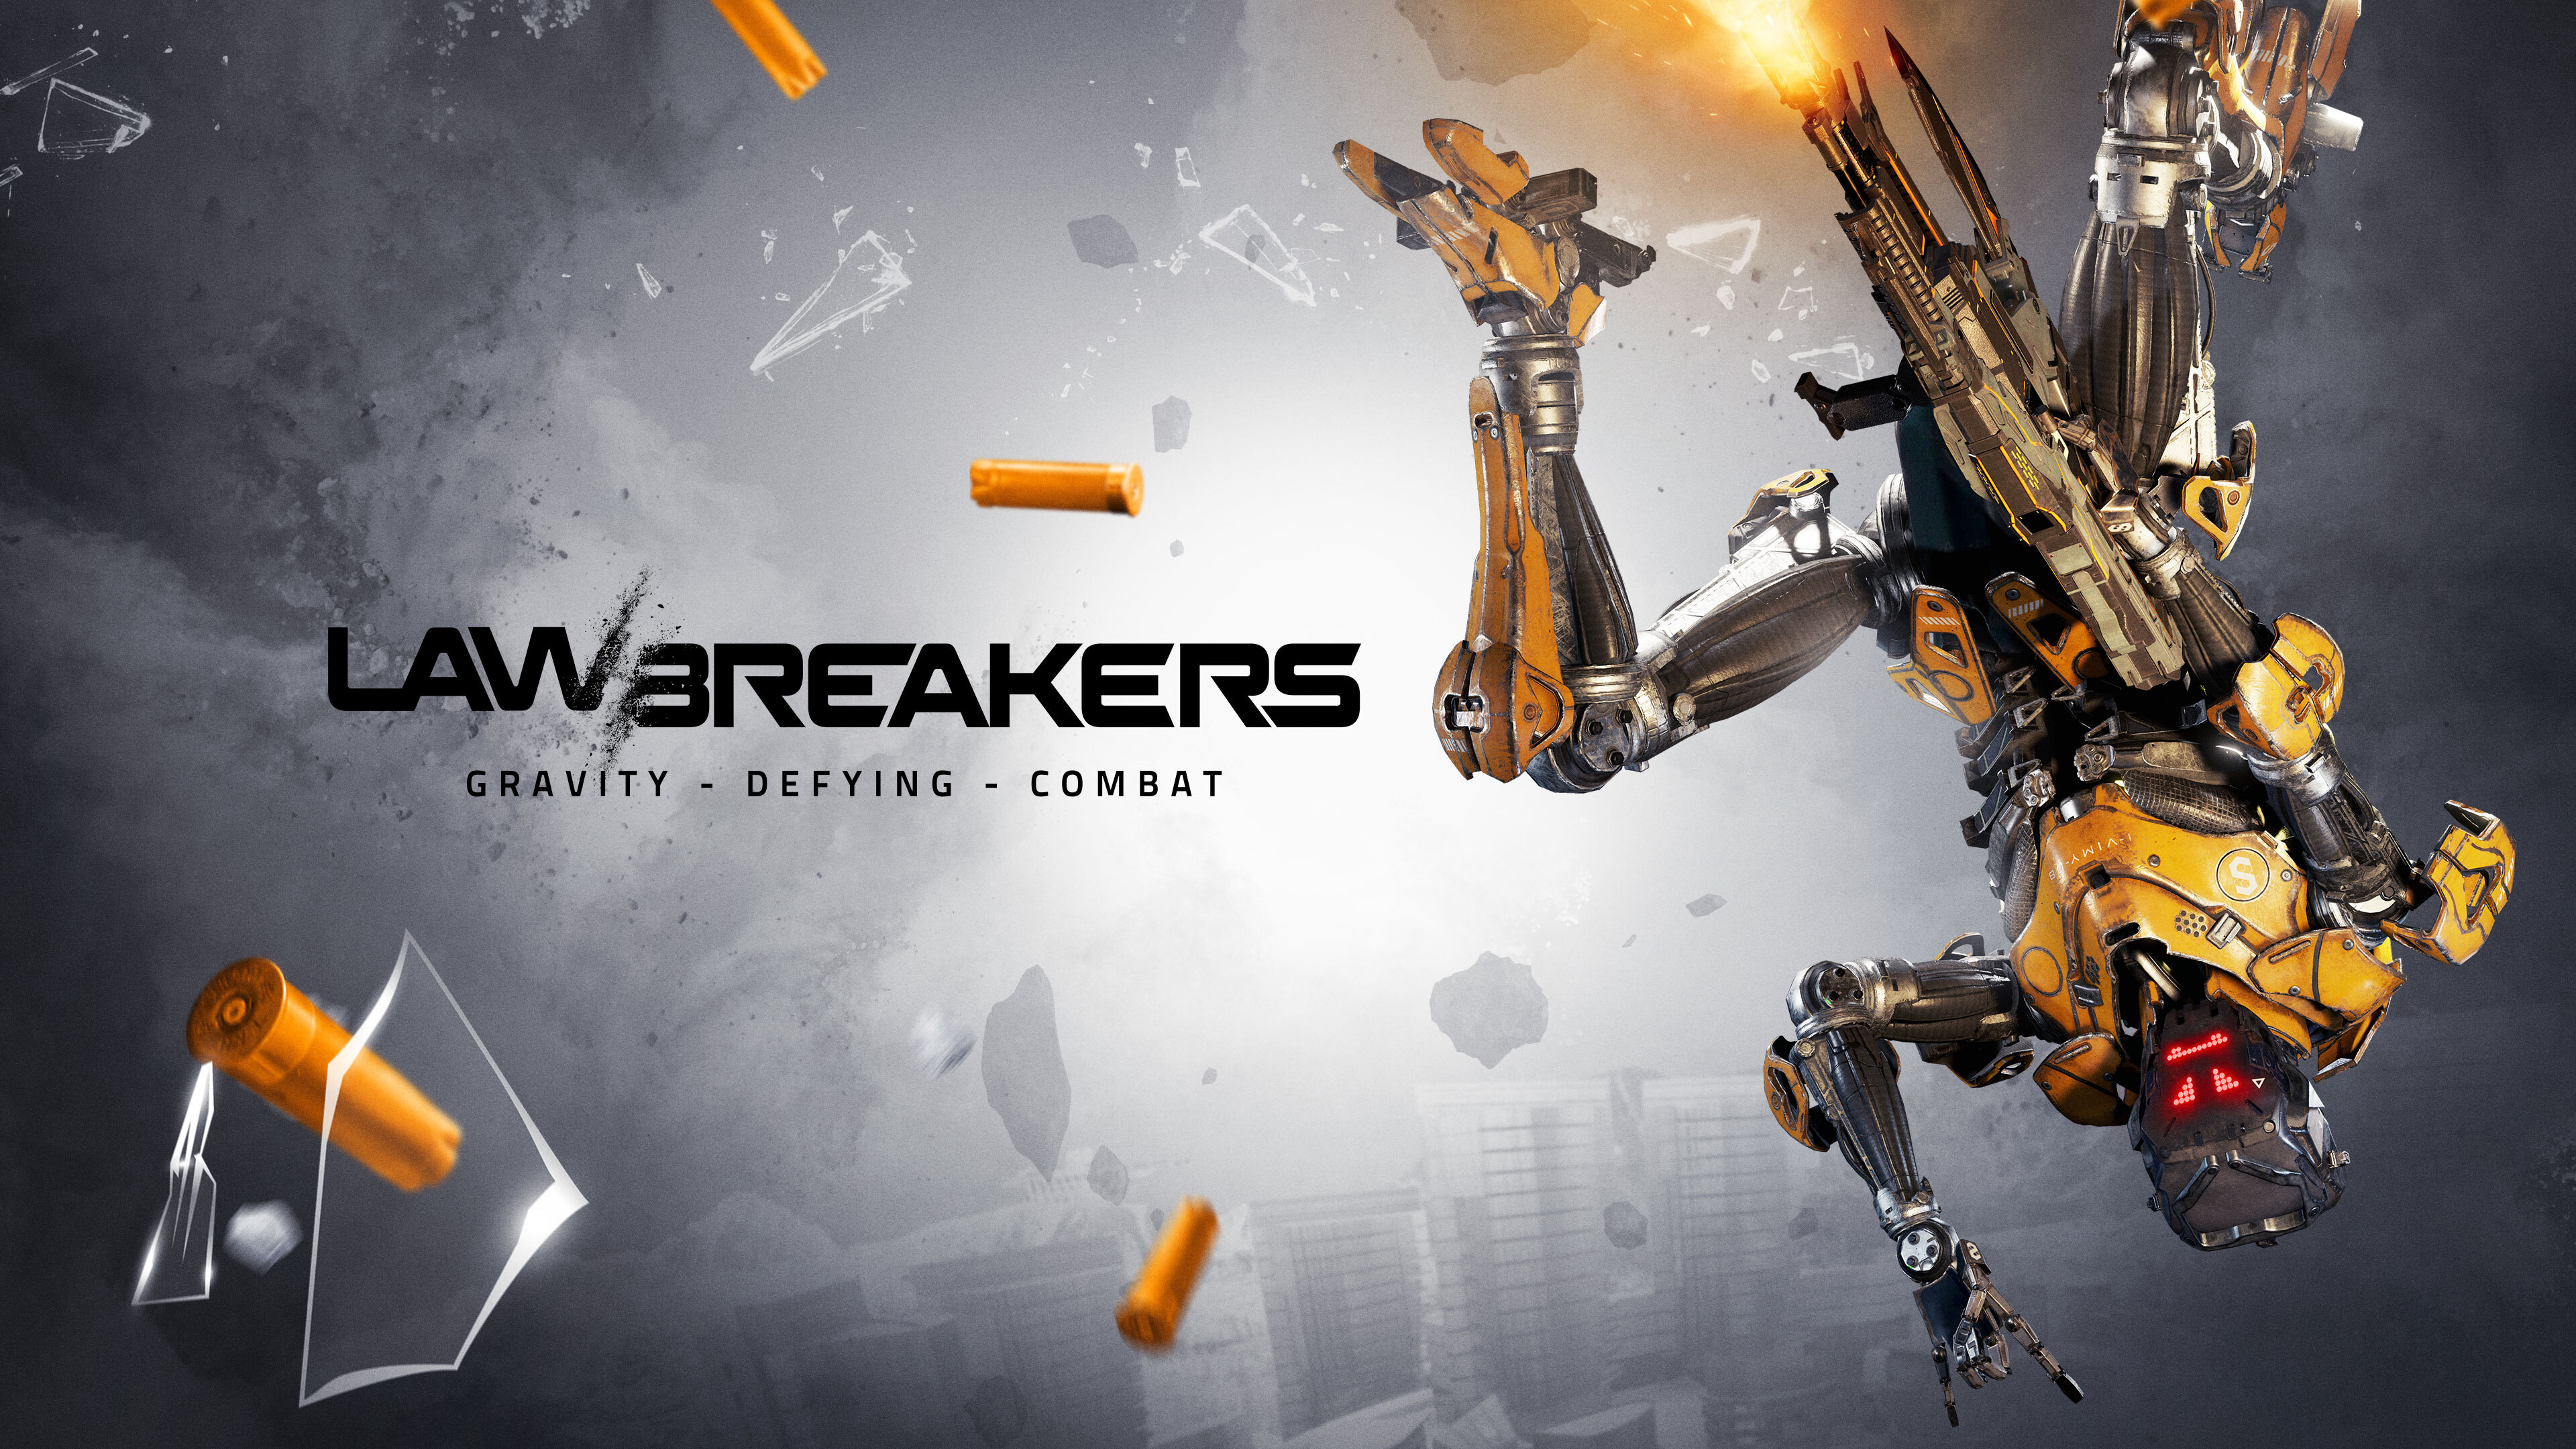 lawbreakers-2017-video-game-01.jpg